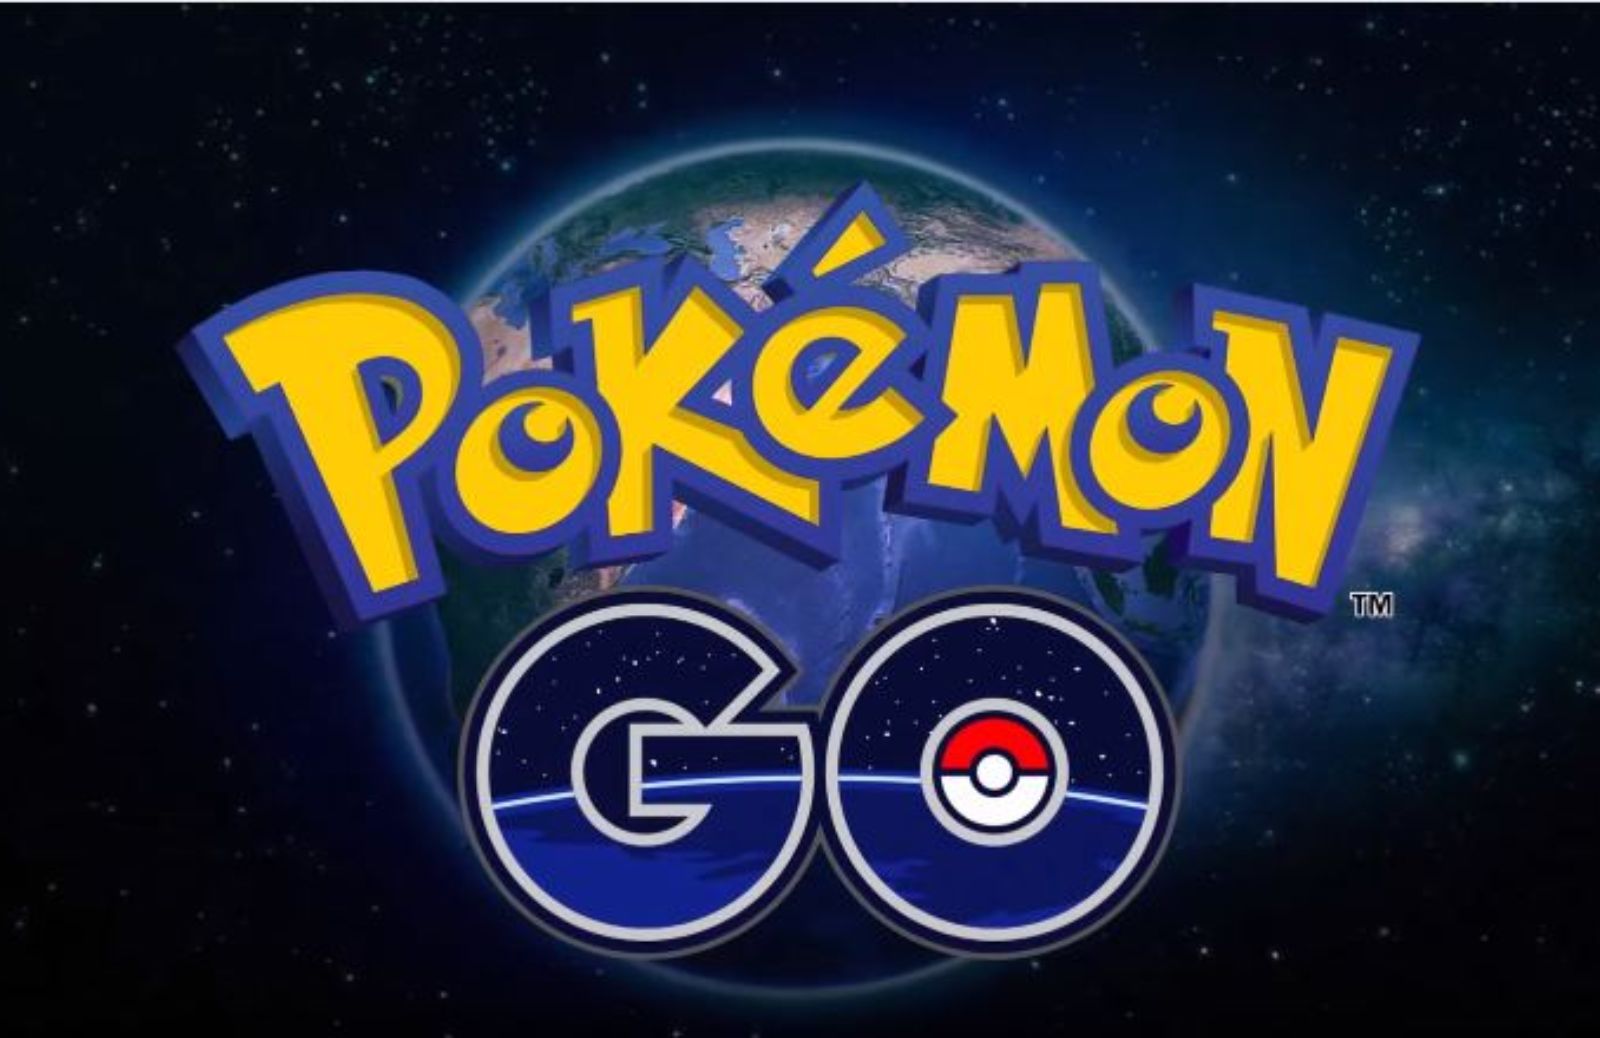 Pokémon Go, è mania: ecco l'app che spopola negli USA